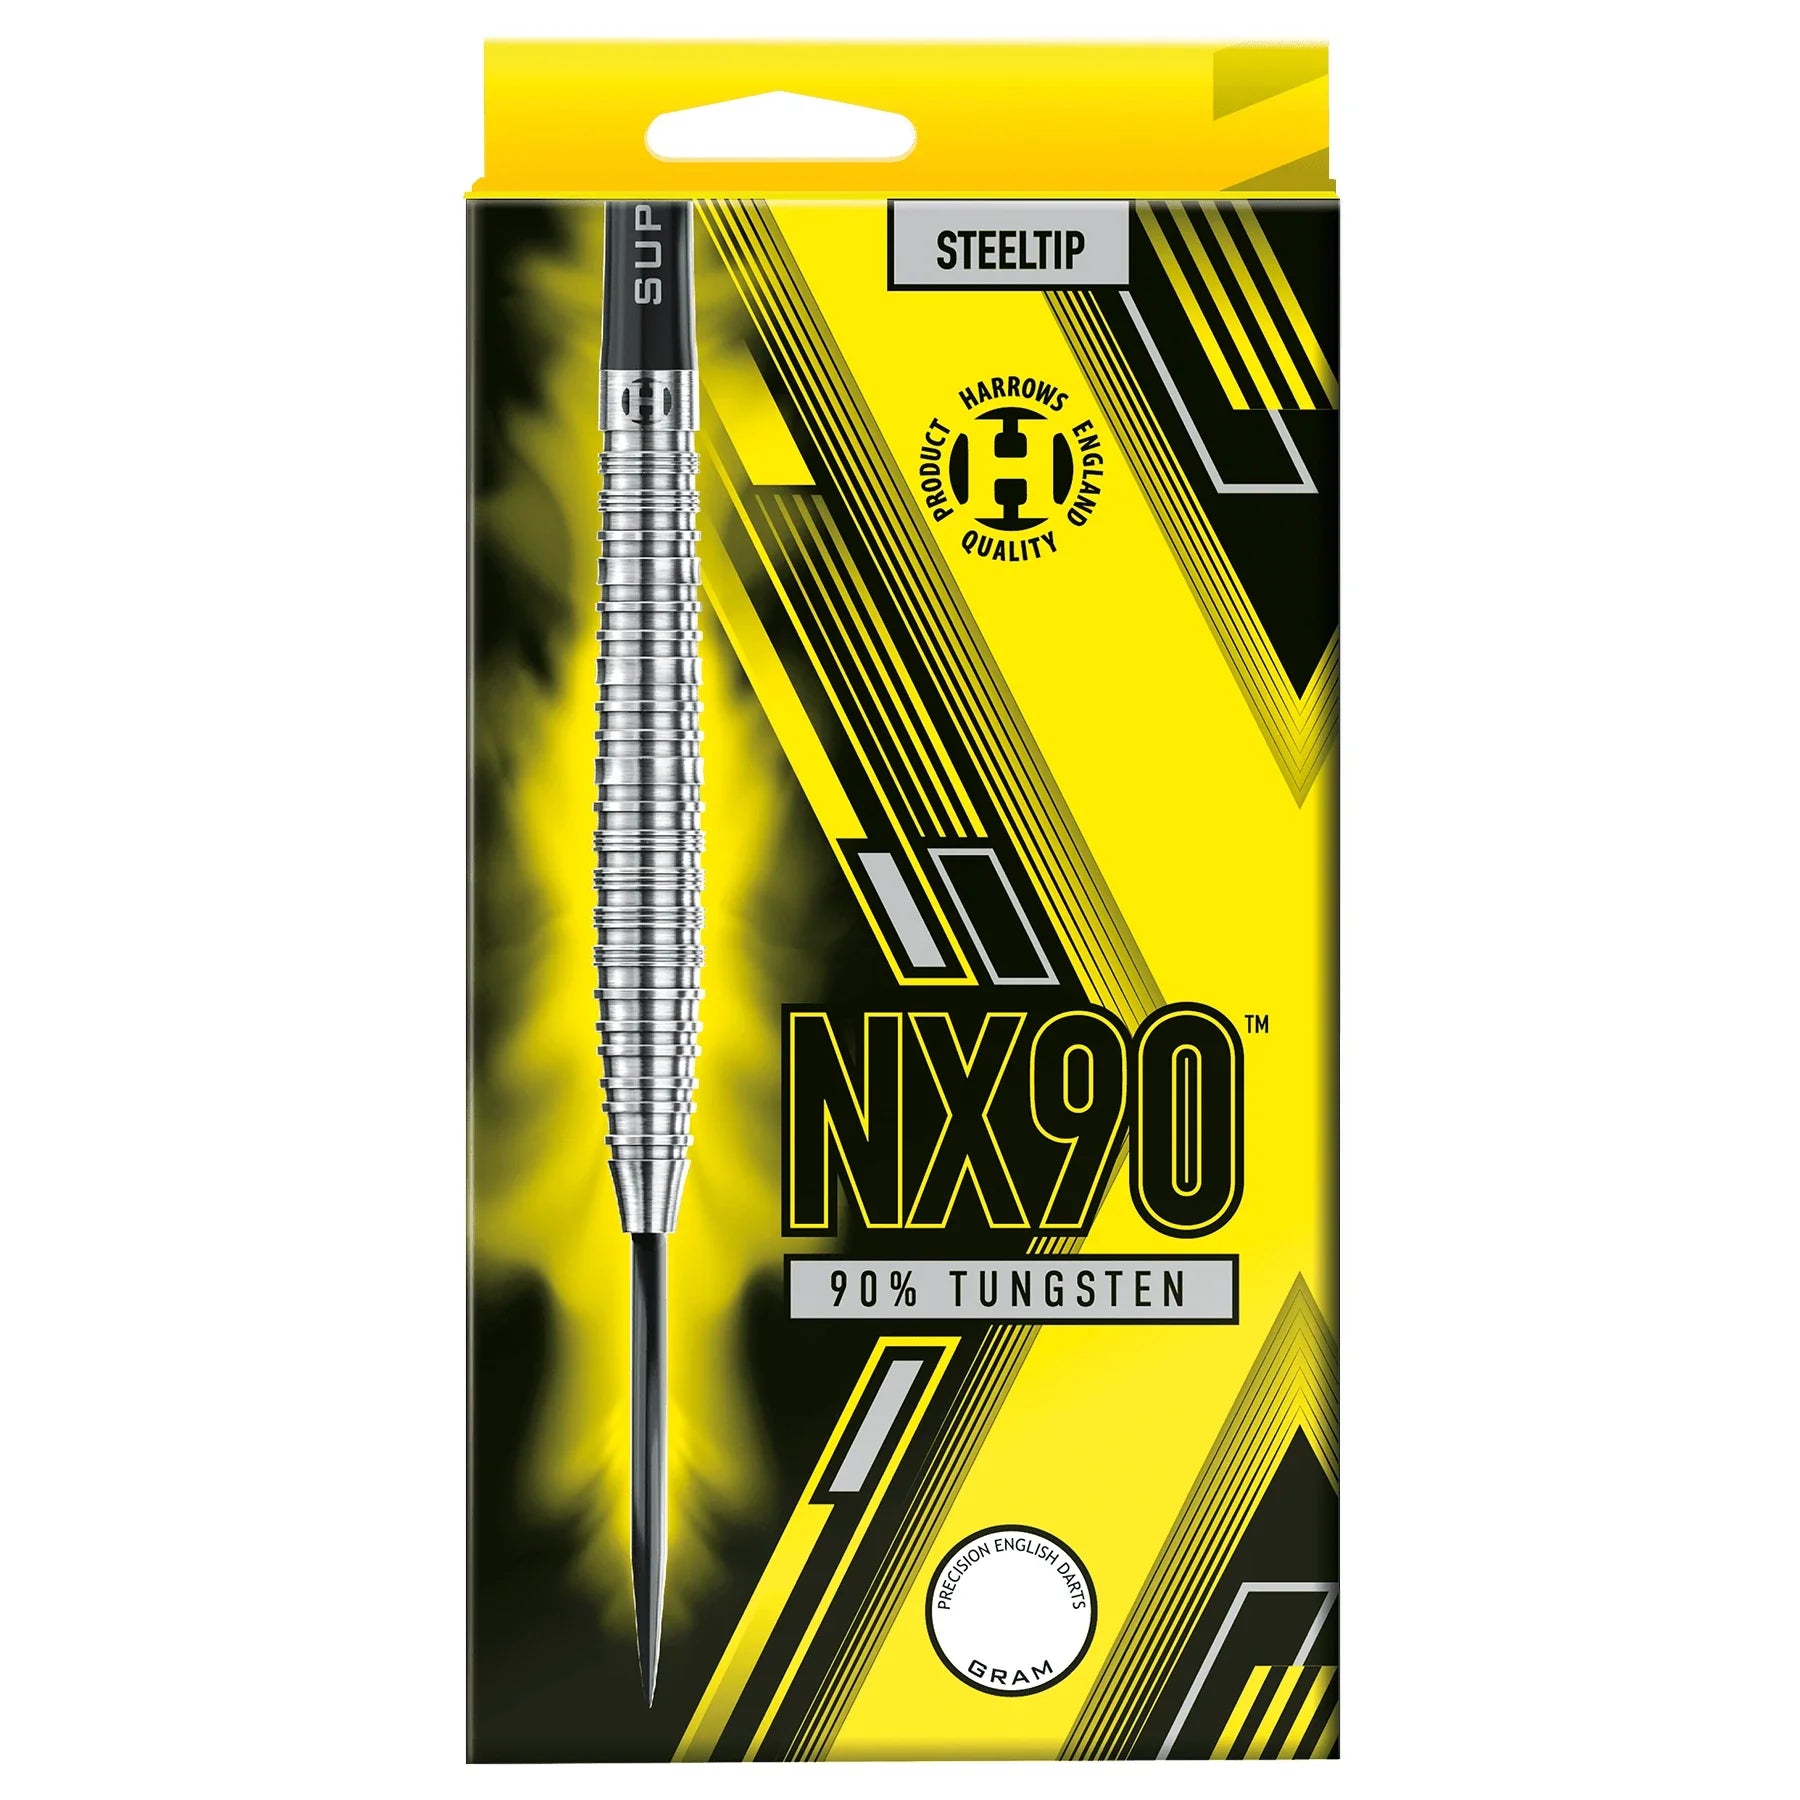 Harrows NX90 21g Darts